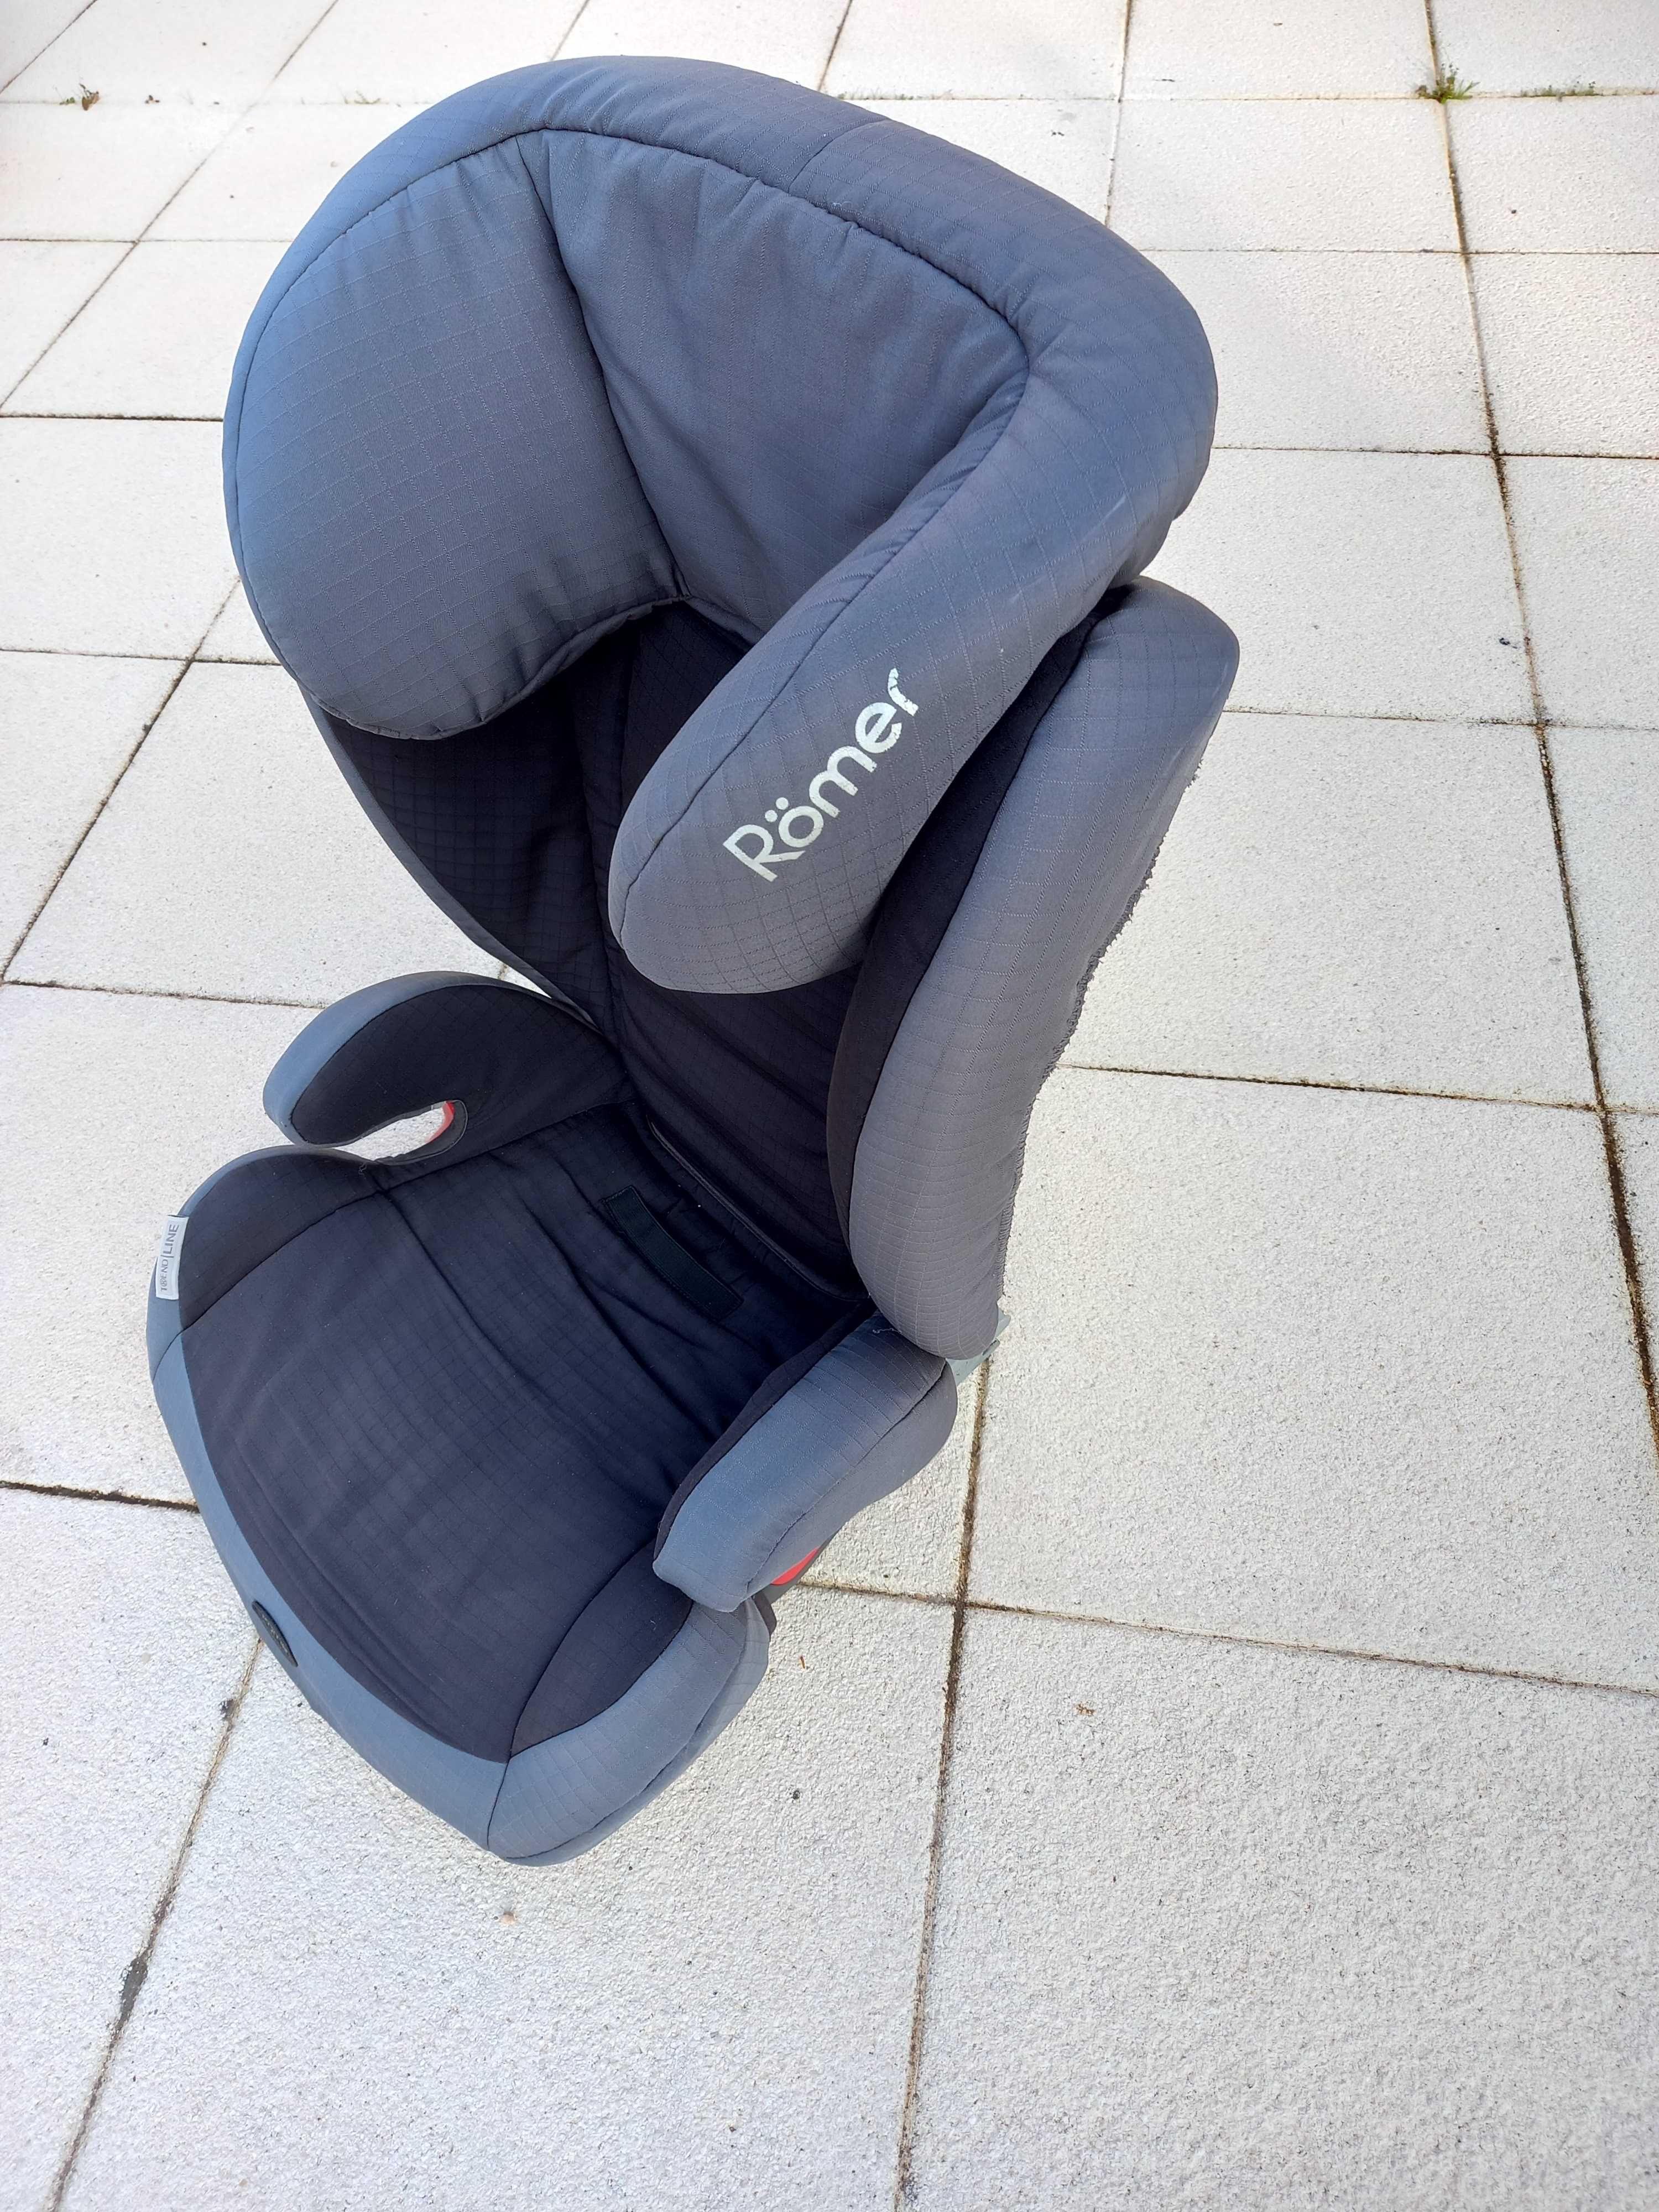 Romër - Cadeira auto para criança 15-36 kg